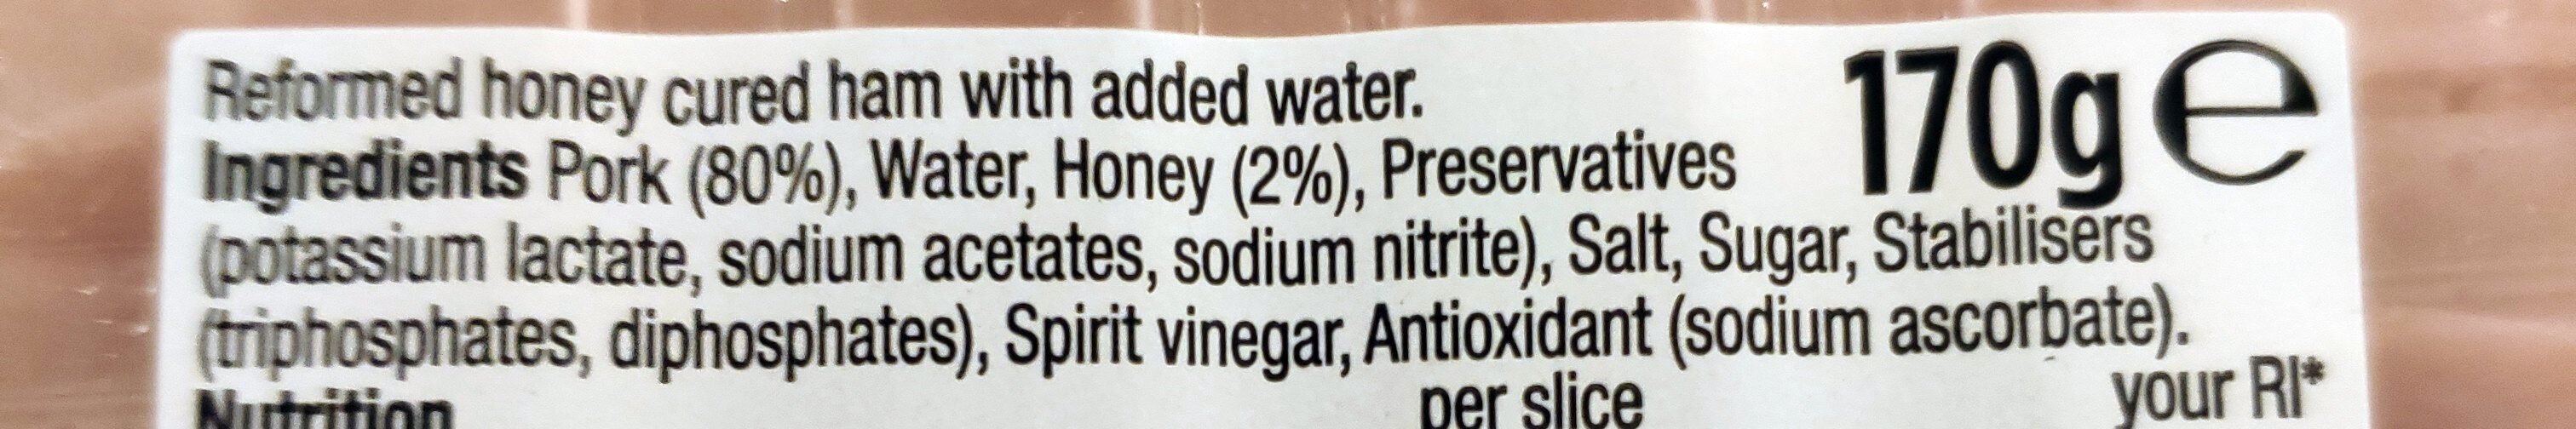 Honey cured - Ingredients